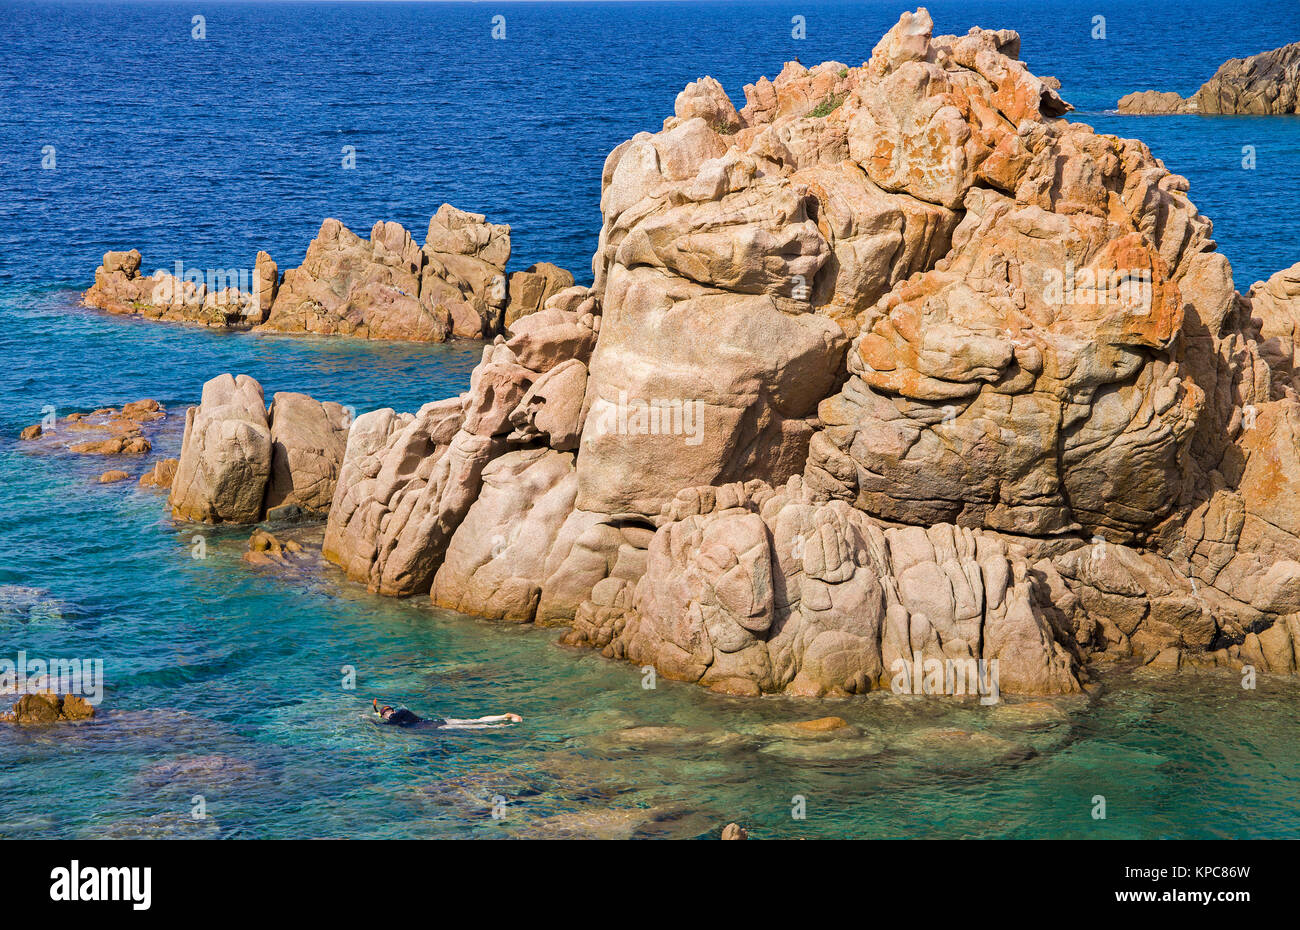 Schnorchler an vorgelagerten Porphyrklippen, Costa Paradiso, Sardinien, Italien, Mittelmeer, Europa Stockfoto